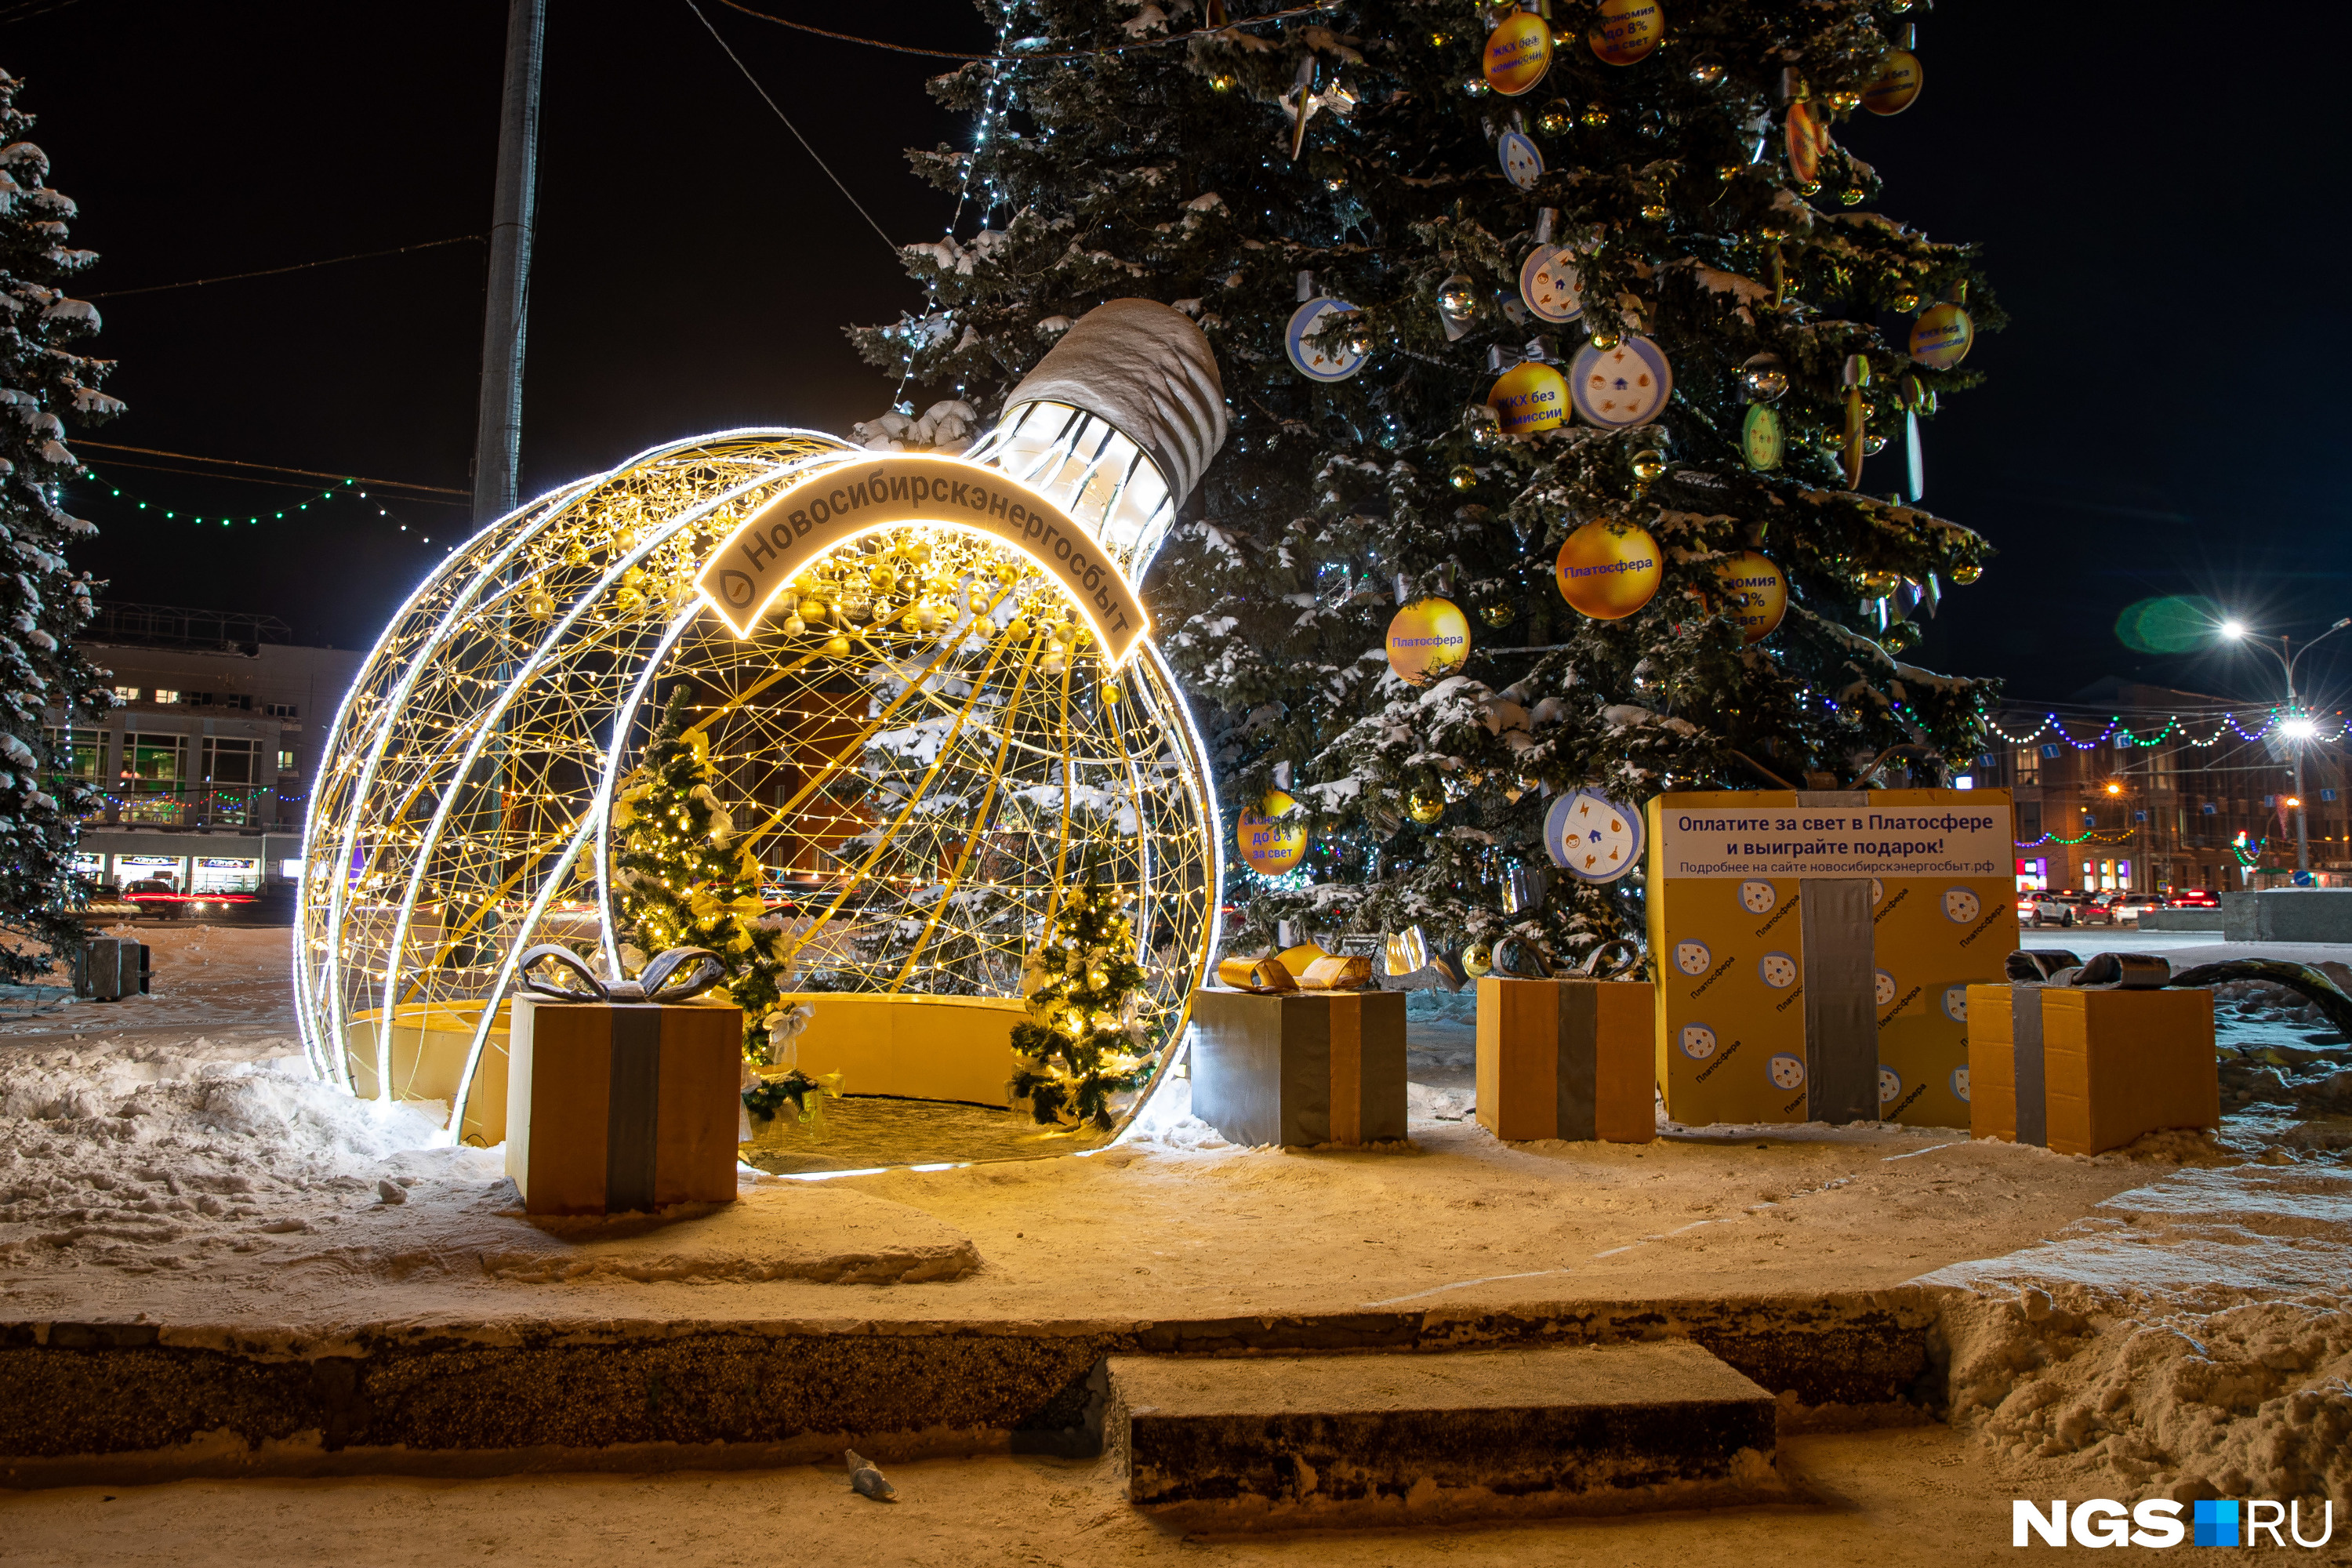 Некоторые организации приняли участие в украшении Новосибирска. Вот, например, арт-объект в виде лампочки с гирляндами от энергетической компании